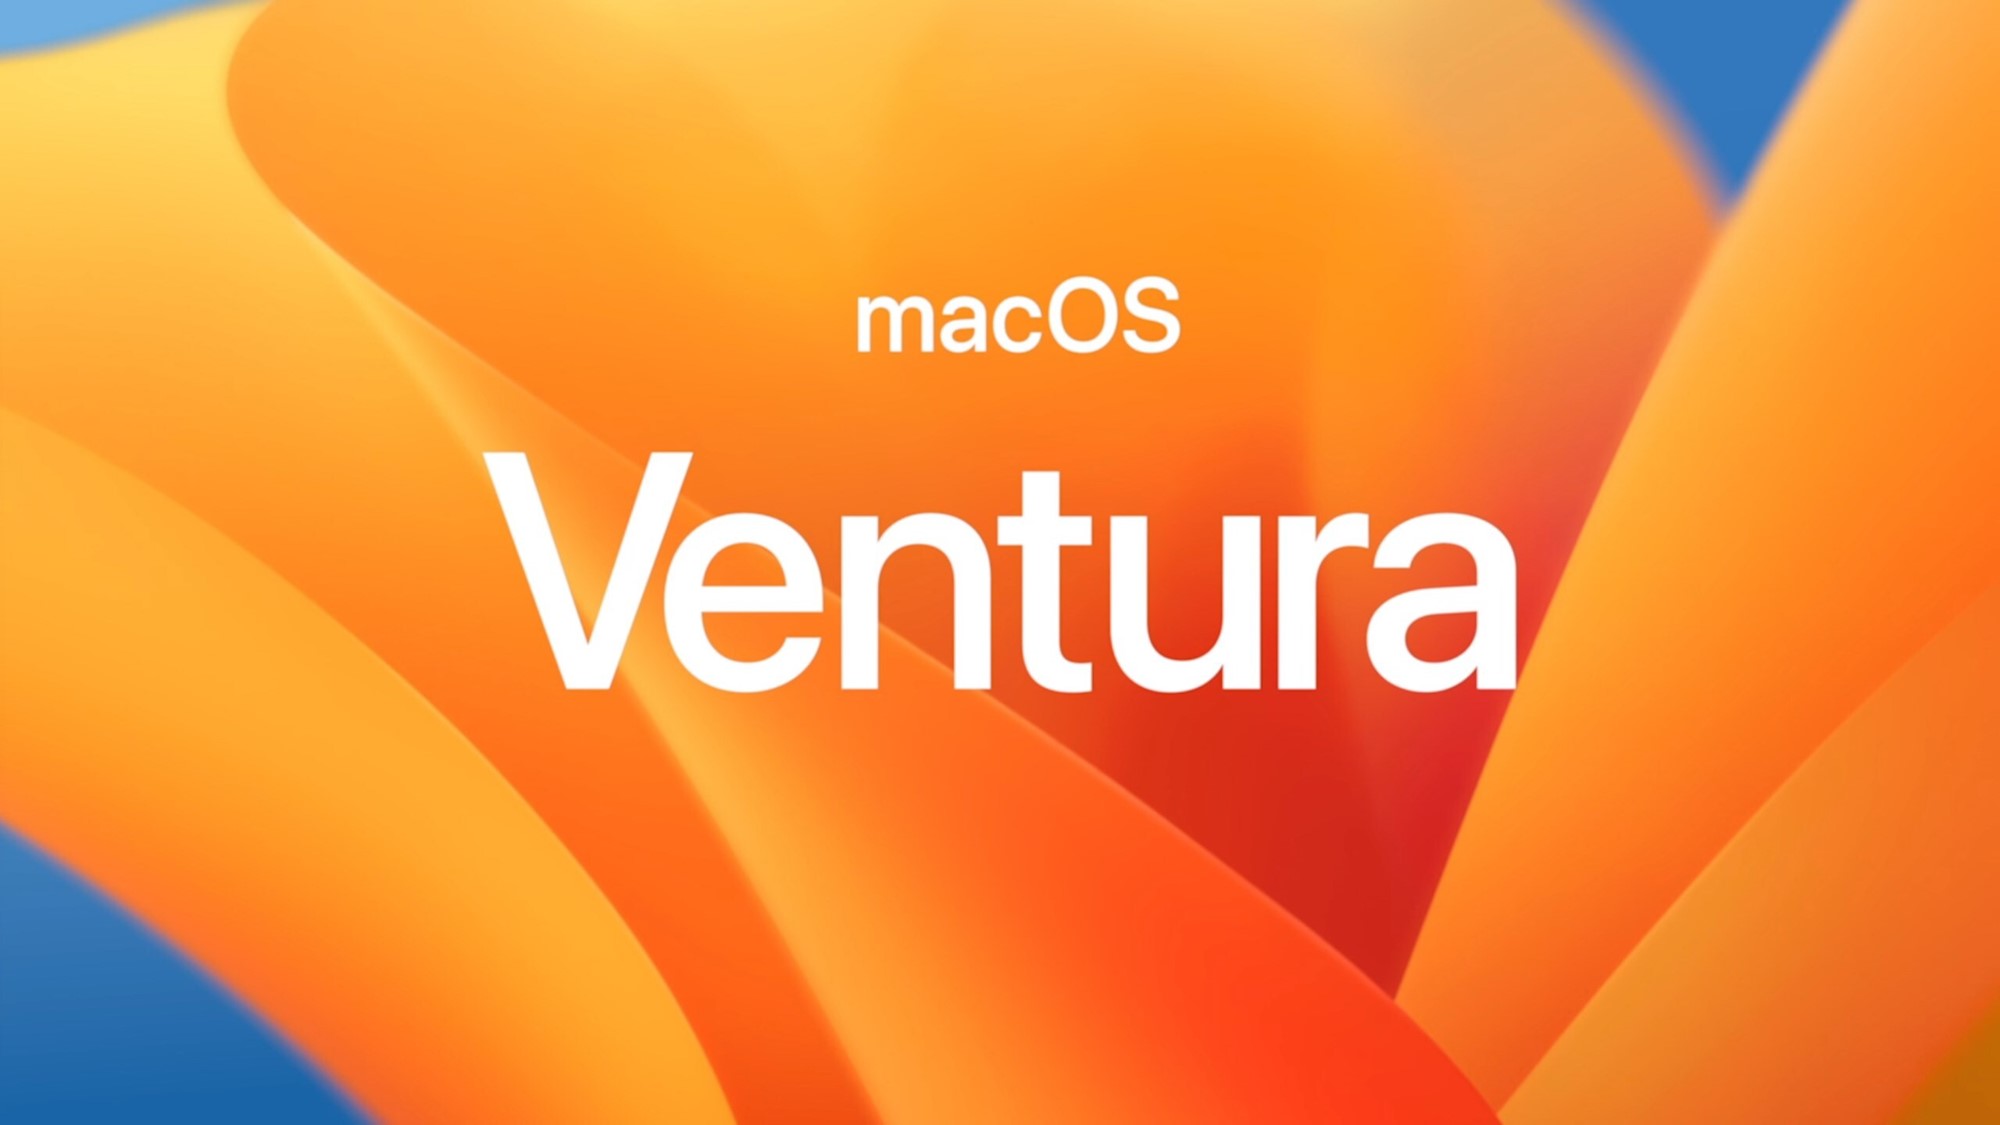 اپل macOS Ventura را معرفی کرد